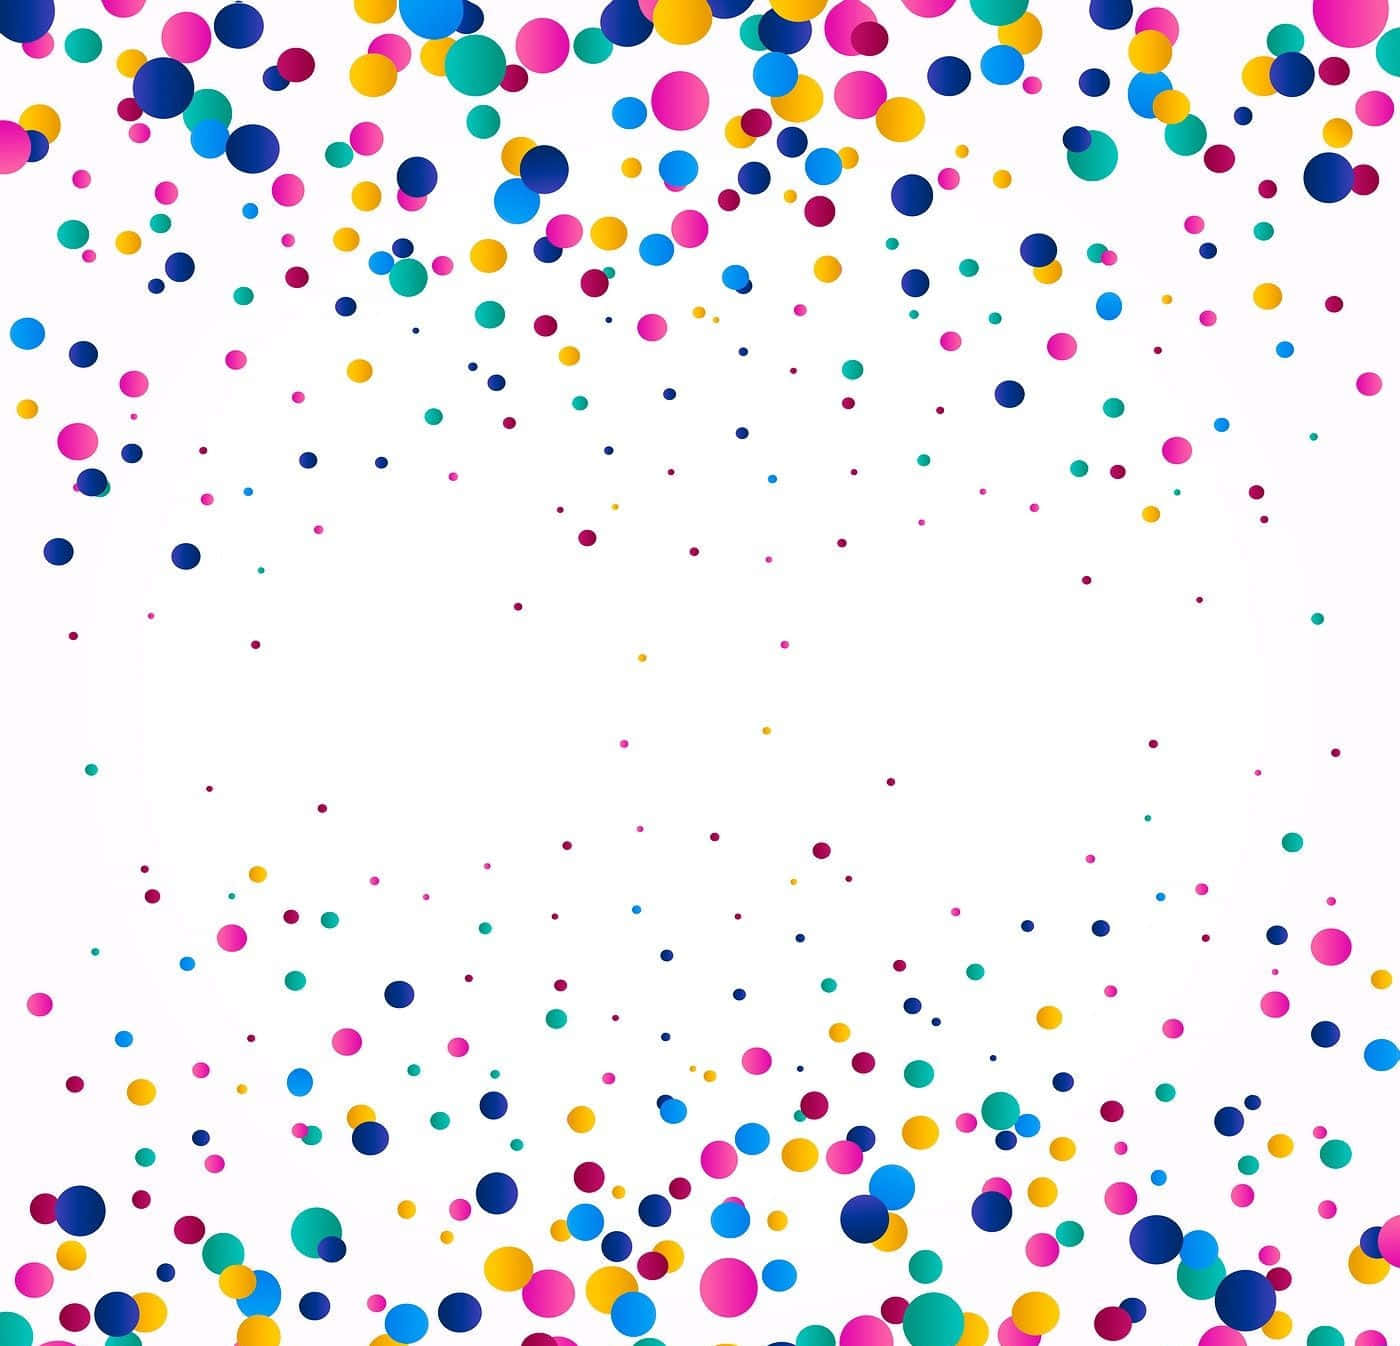 Sfondocon Confetti Multicolori A Forma Di Cerchi